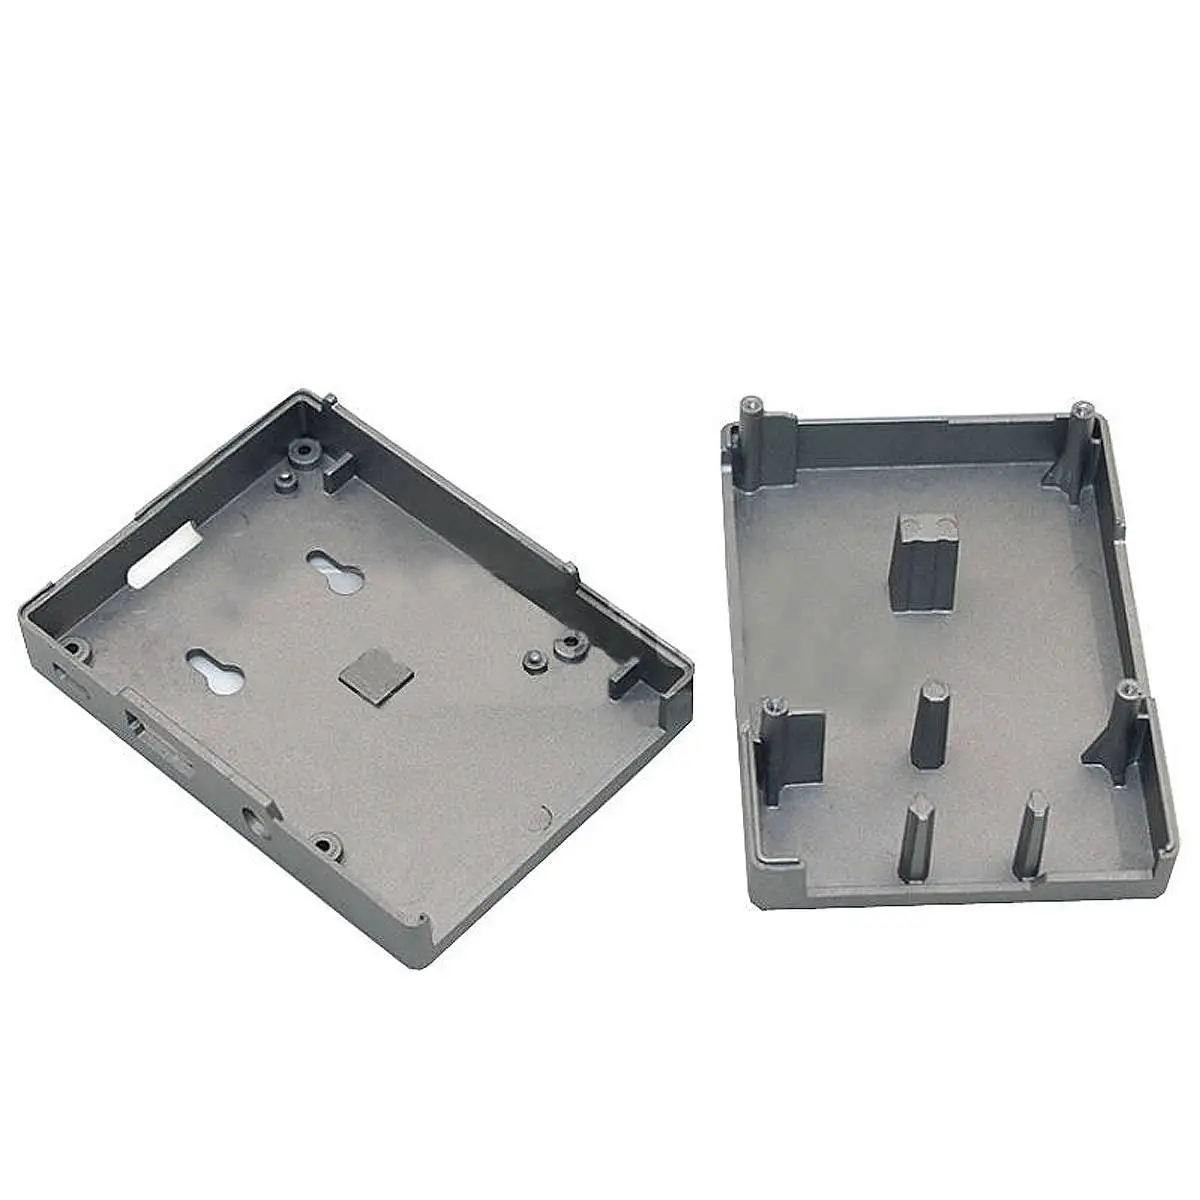 Прочный из алюминиевого сплава конструктивный металлический корпус коробка для Pi B +/B/Pi 2/Pi 3 не нужен вентилятор радиатора, необходимый порт